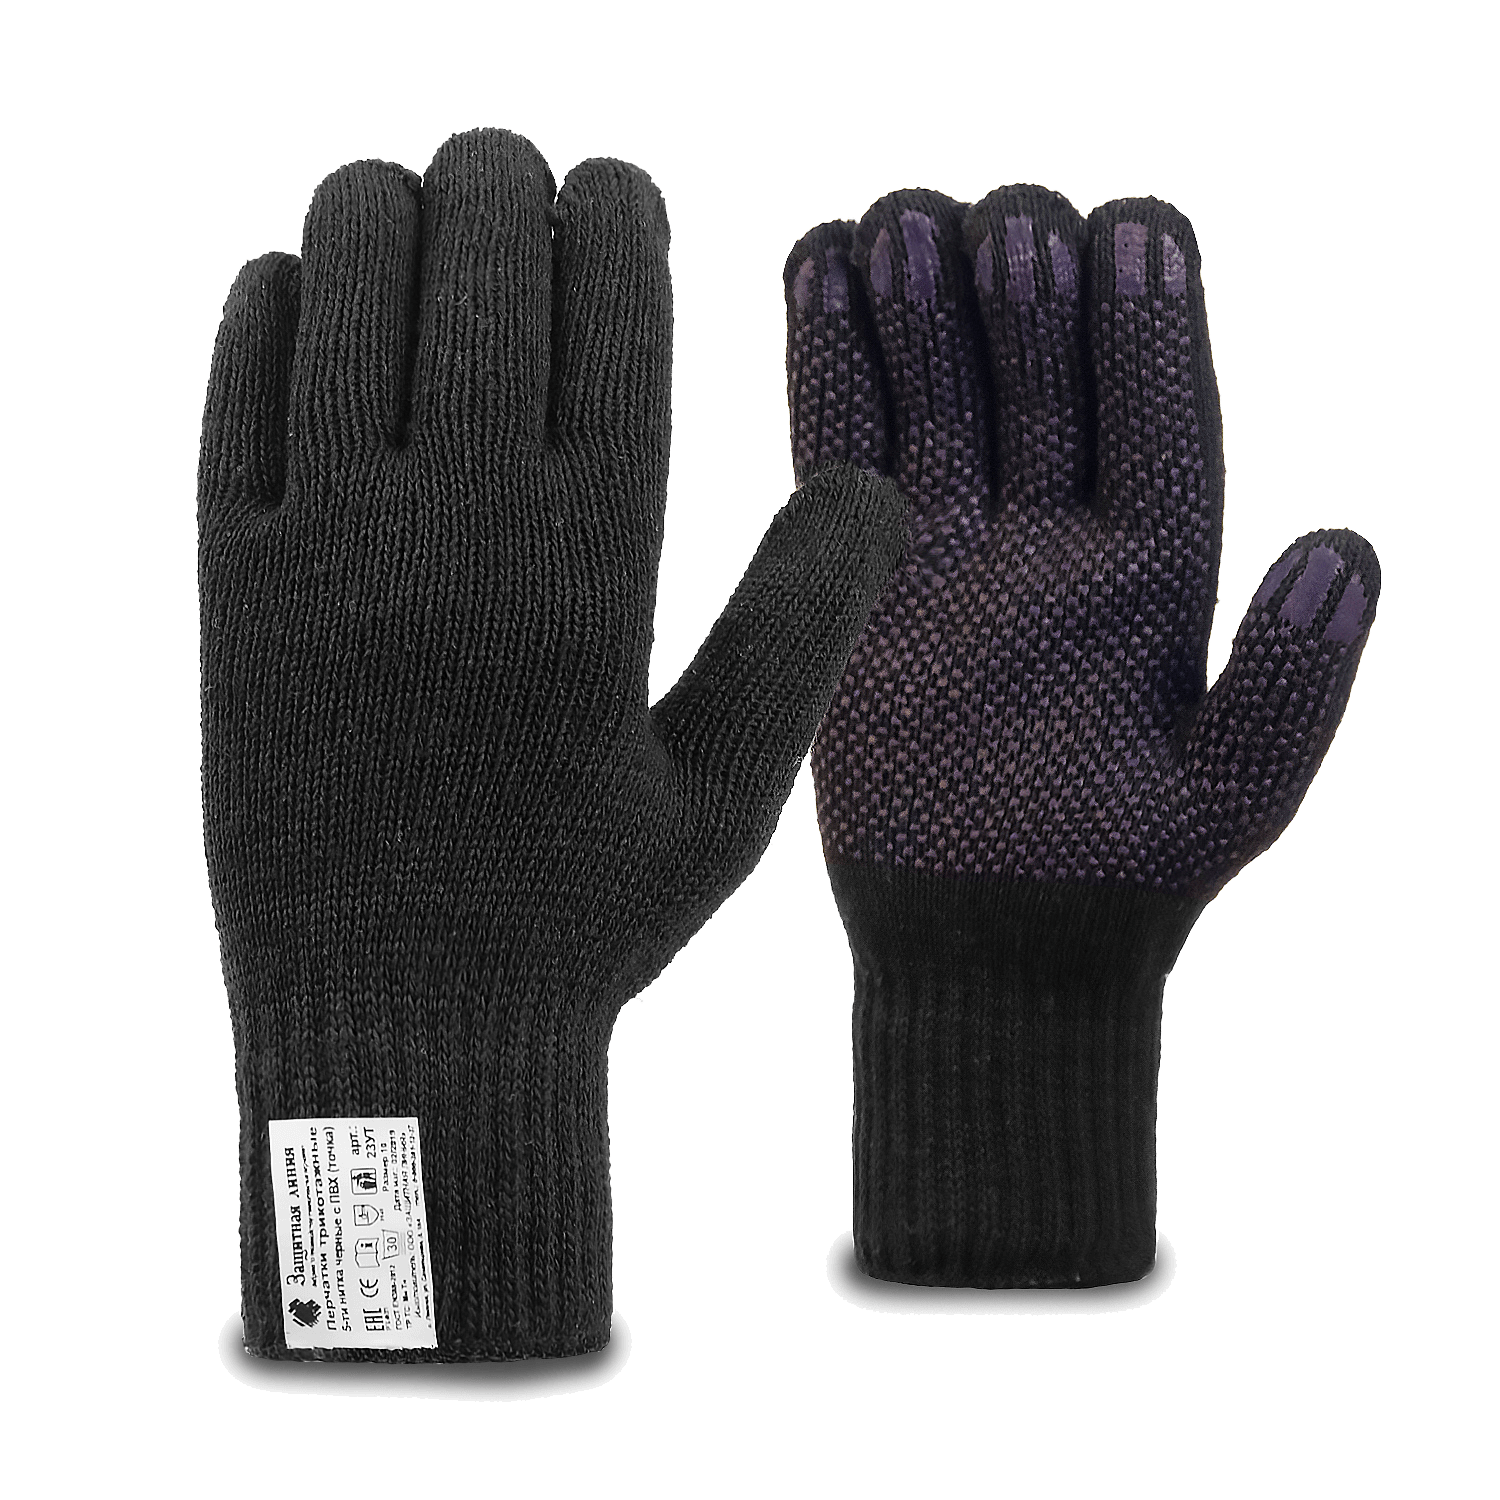 Рабочие перчатки хлопчатобумажные «СУПЕР ЛЮКС» с ПВХ (точка), черные, 7.5 класс, по ГОСТ с маркировкой